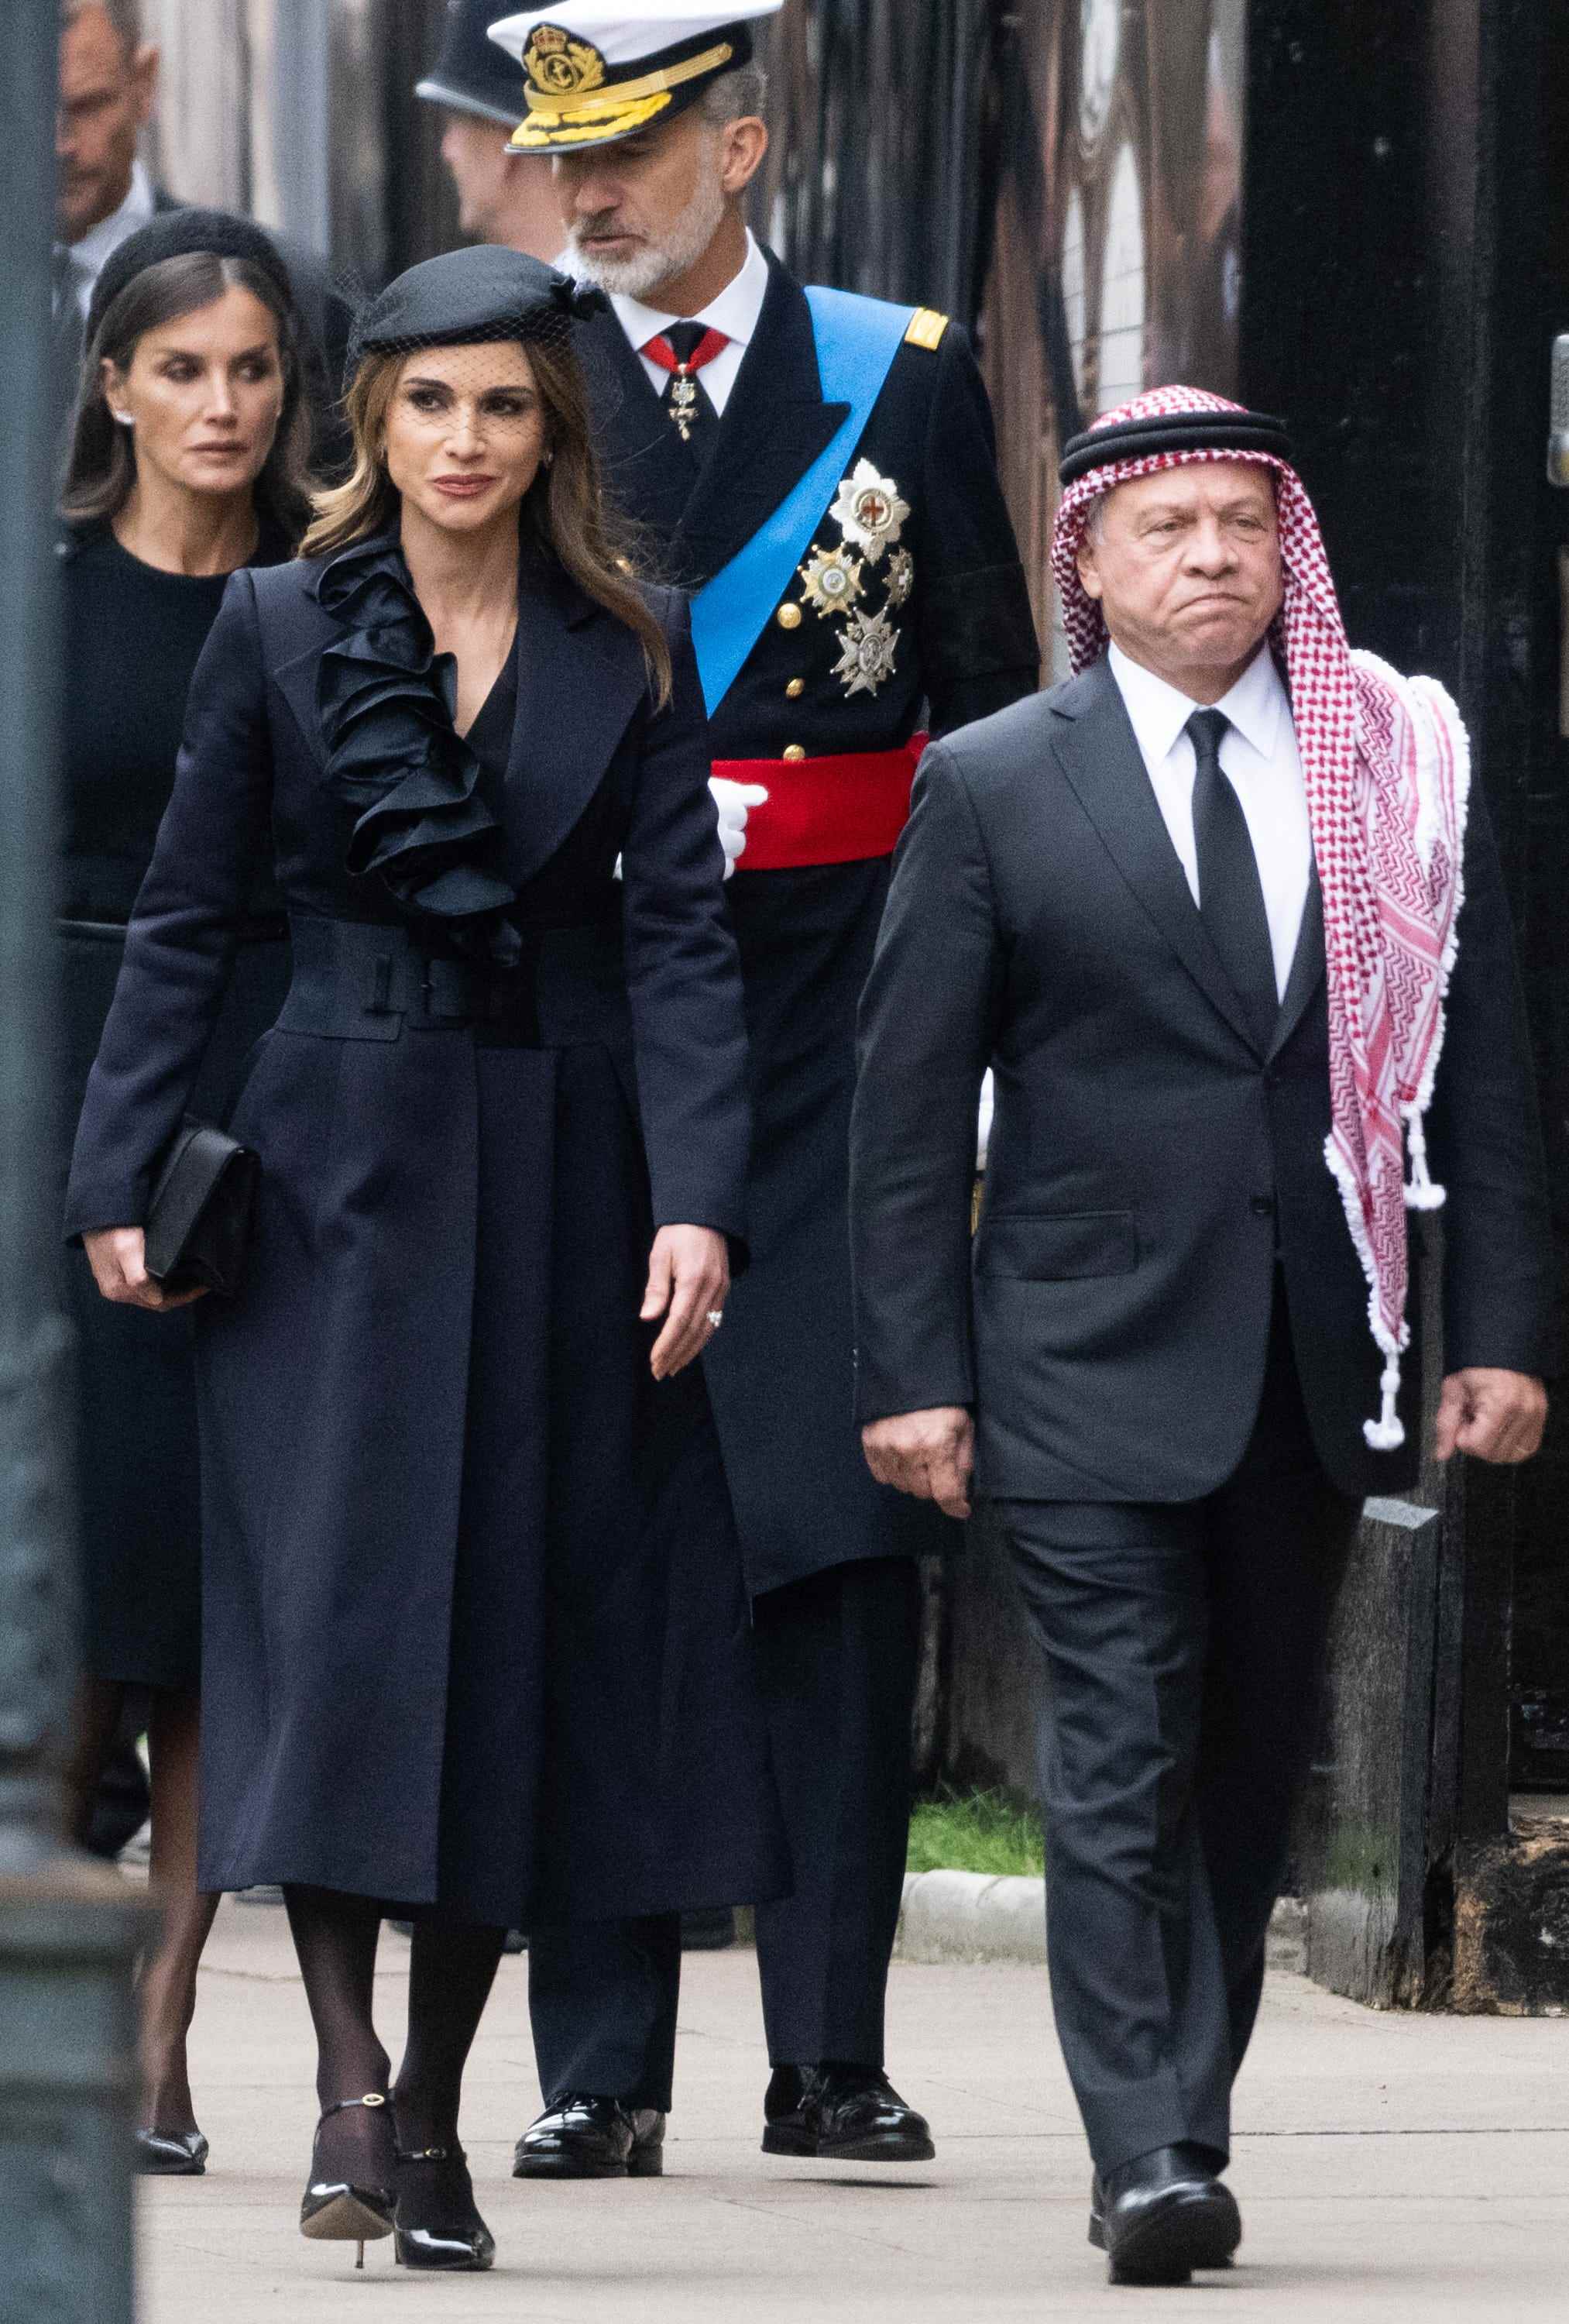 Königin Rania von Jordanien, Abdullah II. von Jordanien während der staatlichen Beerdigung von Königin Elizabeth II. in der Westminster Abbey am 19. September 2022 in London, England.